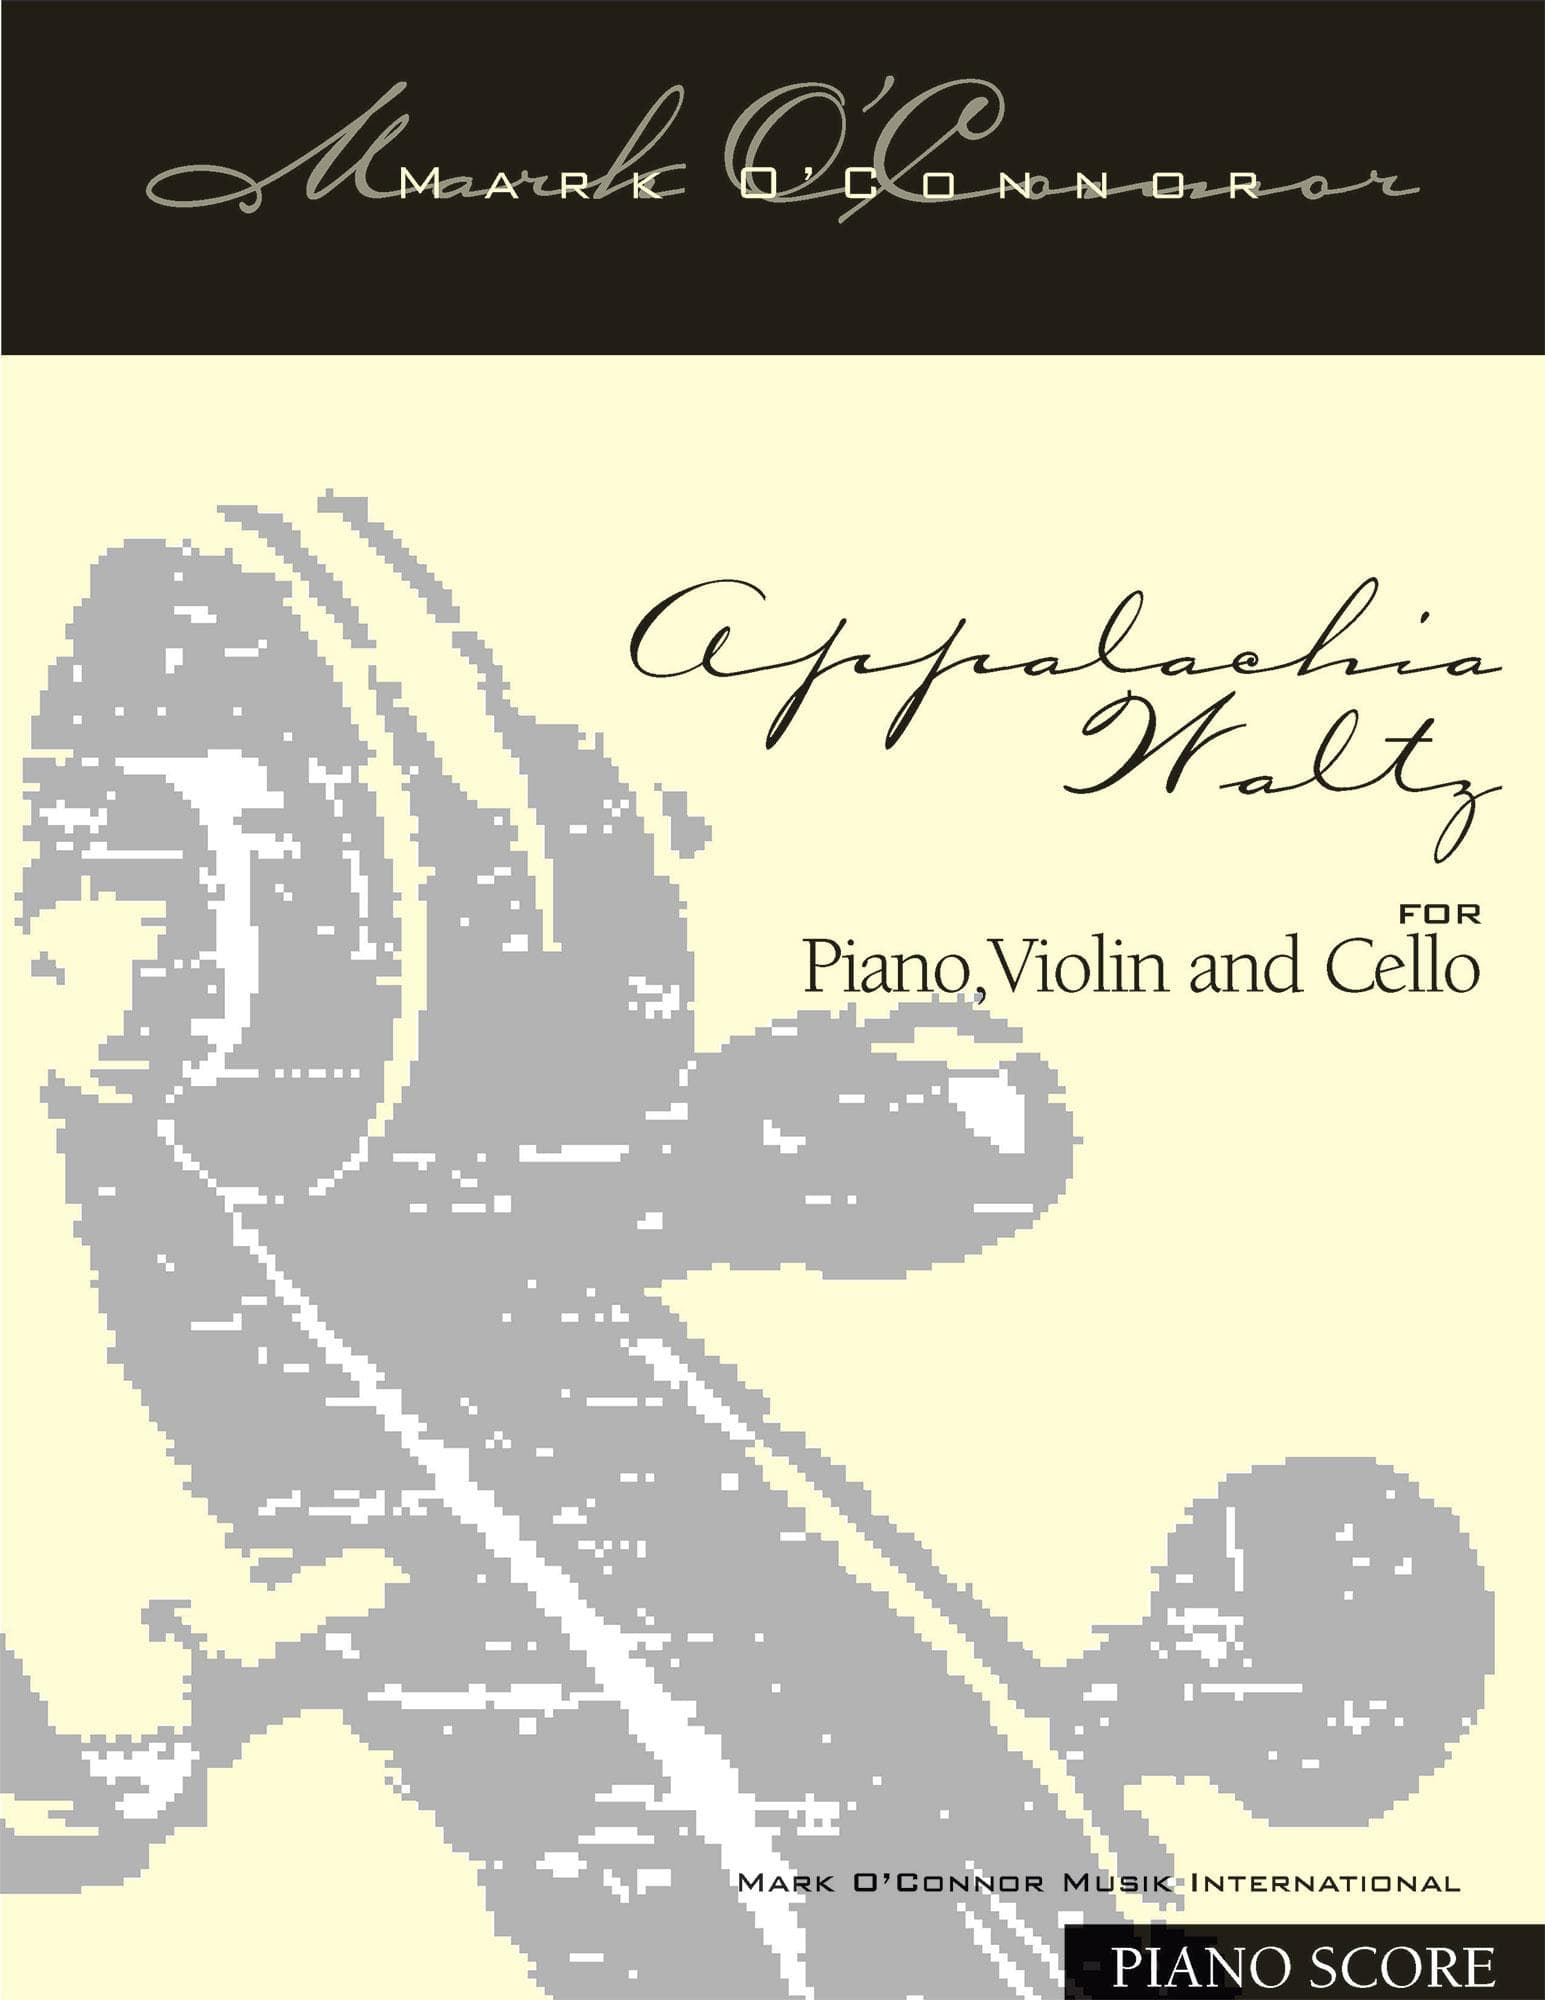 O'Connor, Mark - Appalachia Waltz for Piano, Violin, and Cello - Piano Score - Digital Download